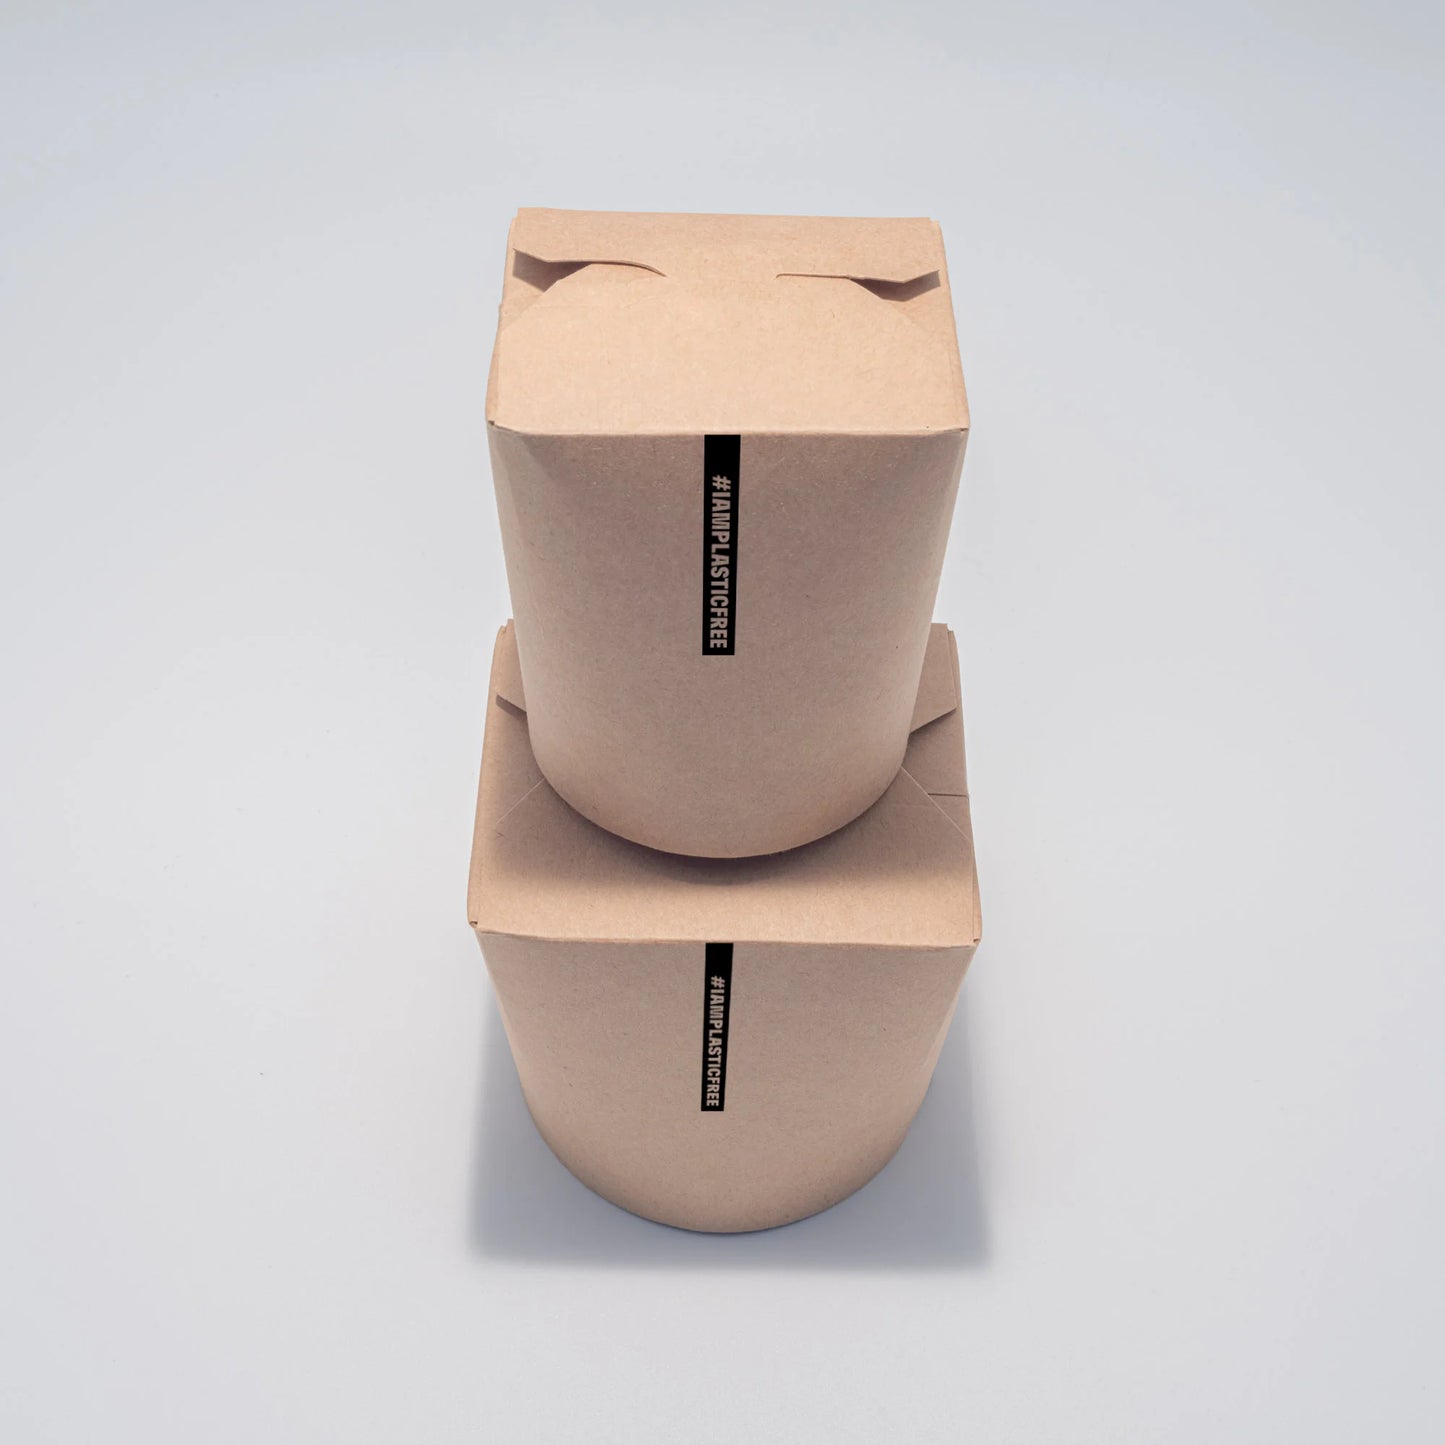 Runde Take-Away-Boxen mit Faltdeckel in zwei Größen aufeinander stehend